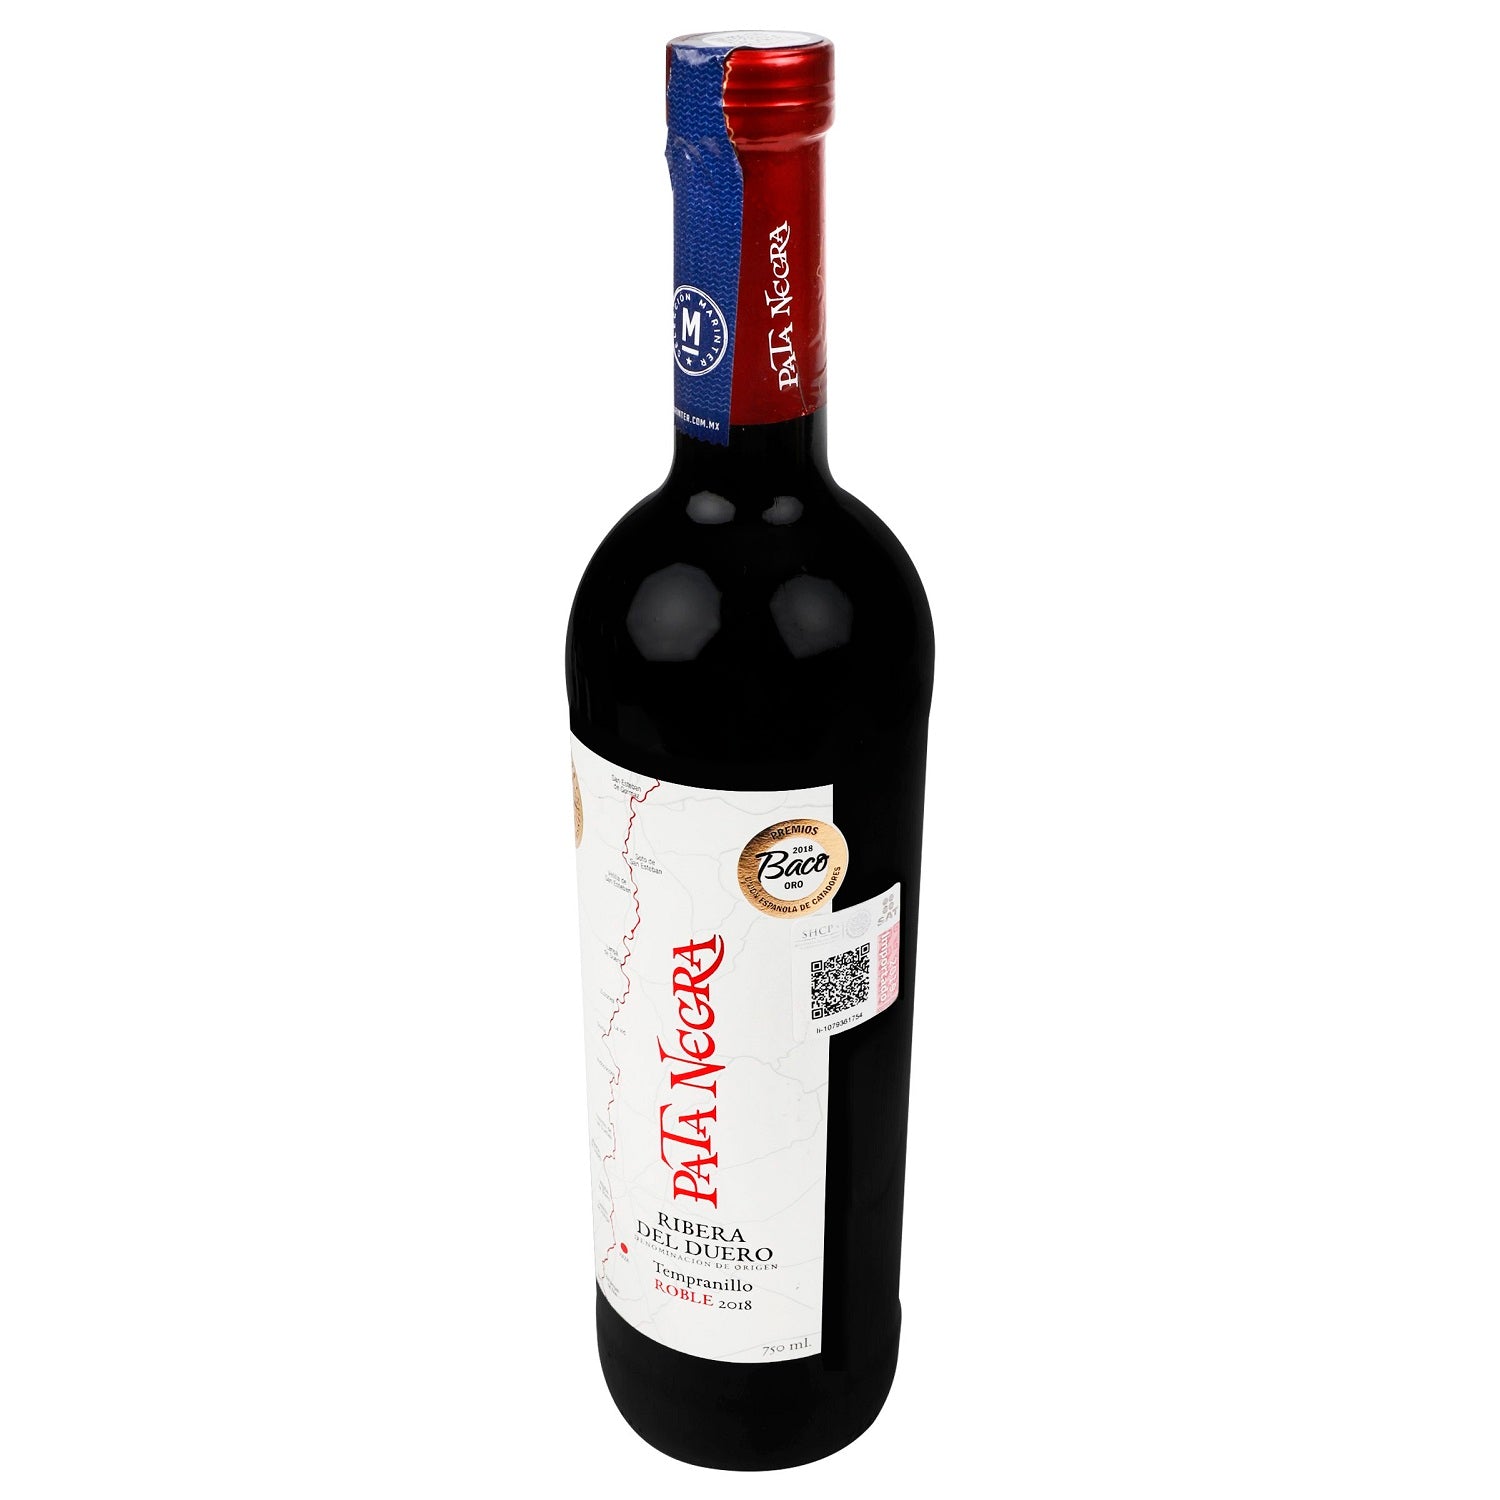 Vino Tinto - Pata Negra Ribera del Duero Roble - 750 ml